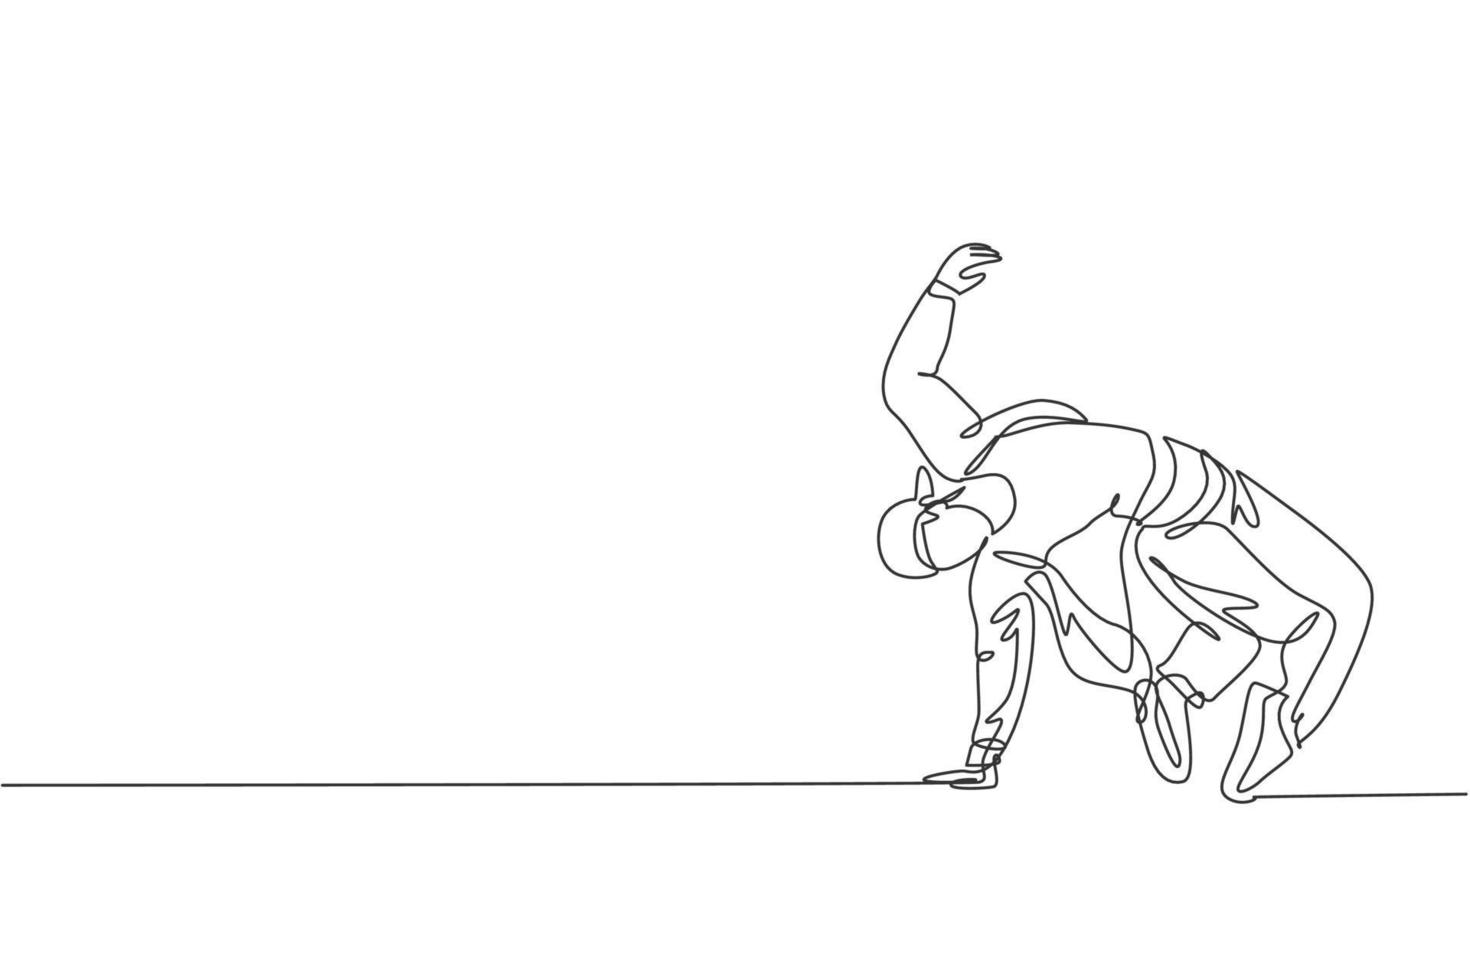 enkele doorlopende lijntekening van jonge energieke hiphopdanser man op trainingspak oefen breakdance op straat. stedelijke generatie levensstijl concept. trendy één lijn tekenen ontwerp vectorillustratie vector